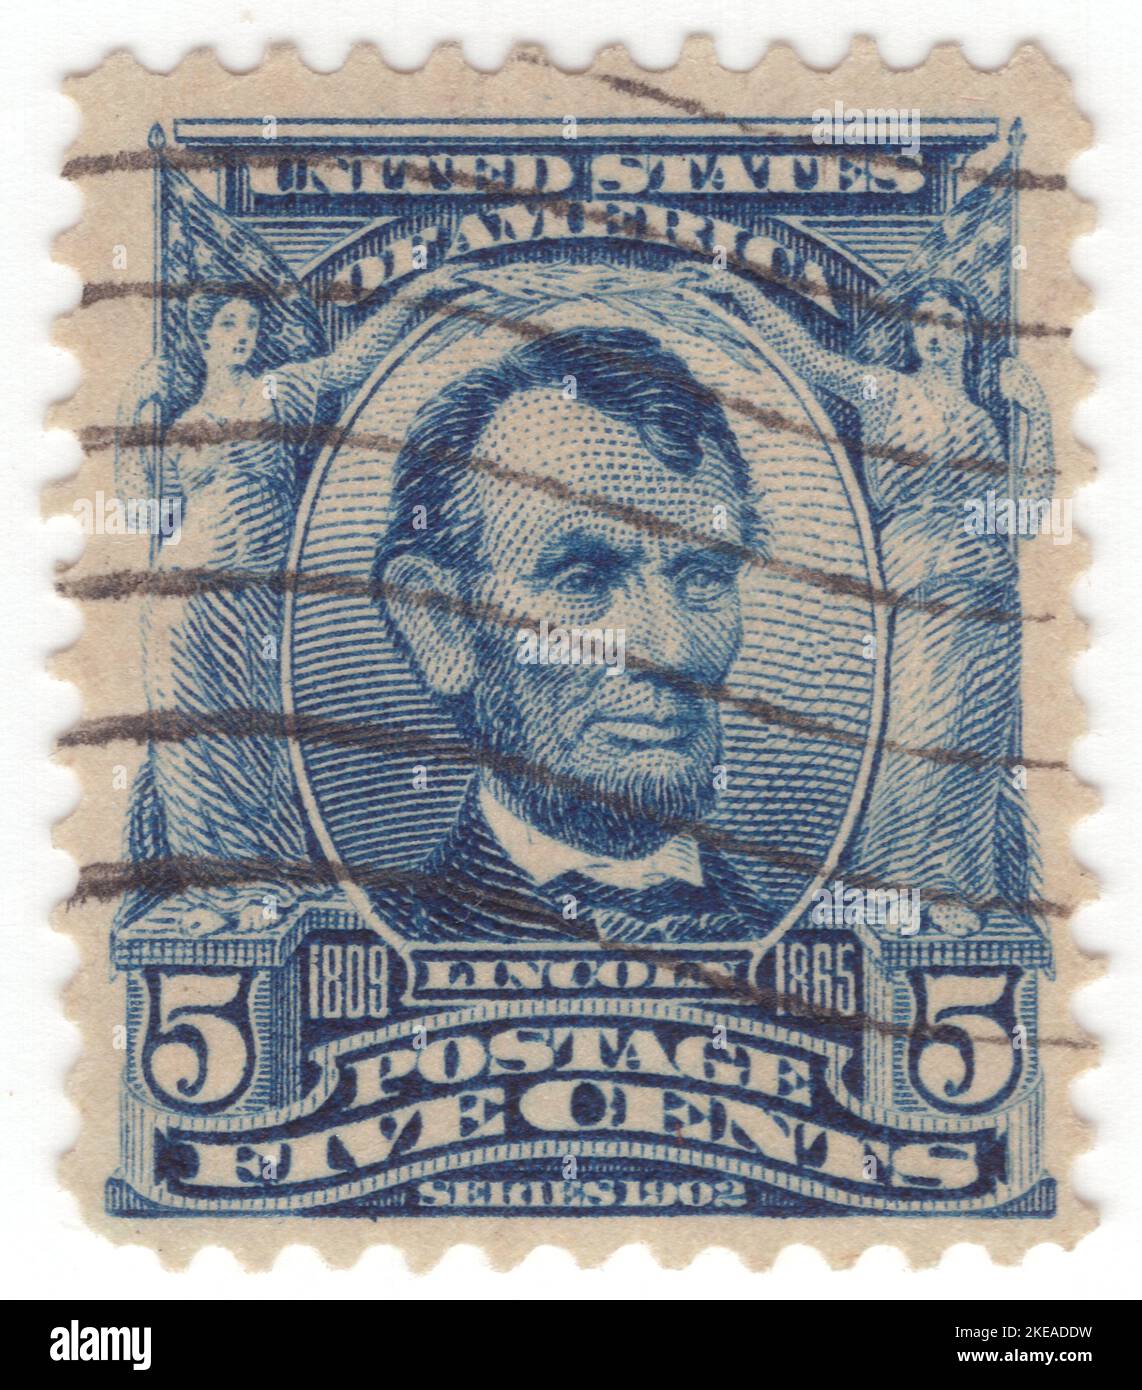 USA - 1903: Eine 5 Cent blaue Briefmarke, die das Porträt von Abraham Lincoln darstellt. Amerikanischer Anwalt und Staatsmann, der von 1861 bis zu seiner Tötung im Jahr 1865 als Präsident der Vereinigten Staaten von 16. diente. Lincoln führte die Nation durch den amerikanischen Bürgerkrieg und gelang es, die Union zu erhalten, die Sklaverei abzuschaffen, die Bundesregierung zu stärken und die US-Wirtschaft zu modernisieren Stockfoto